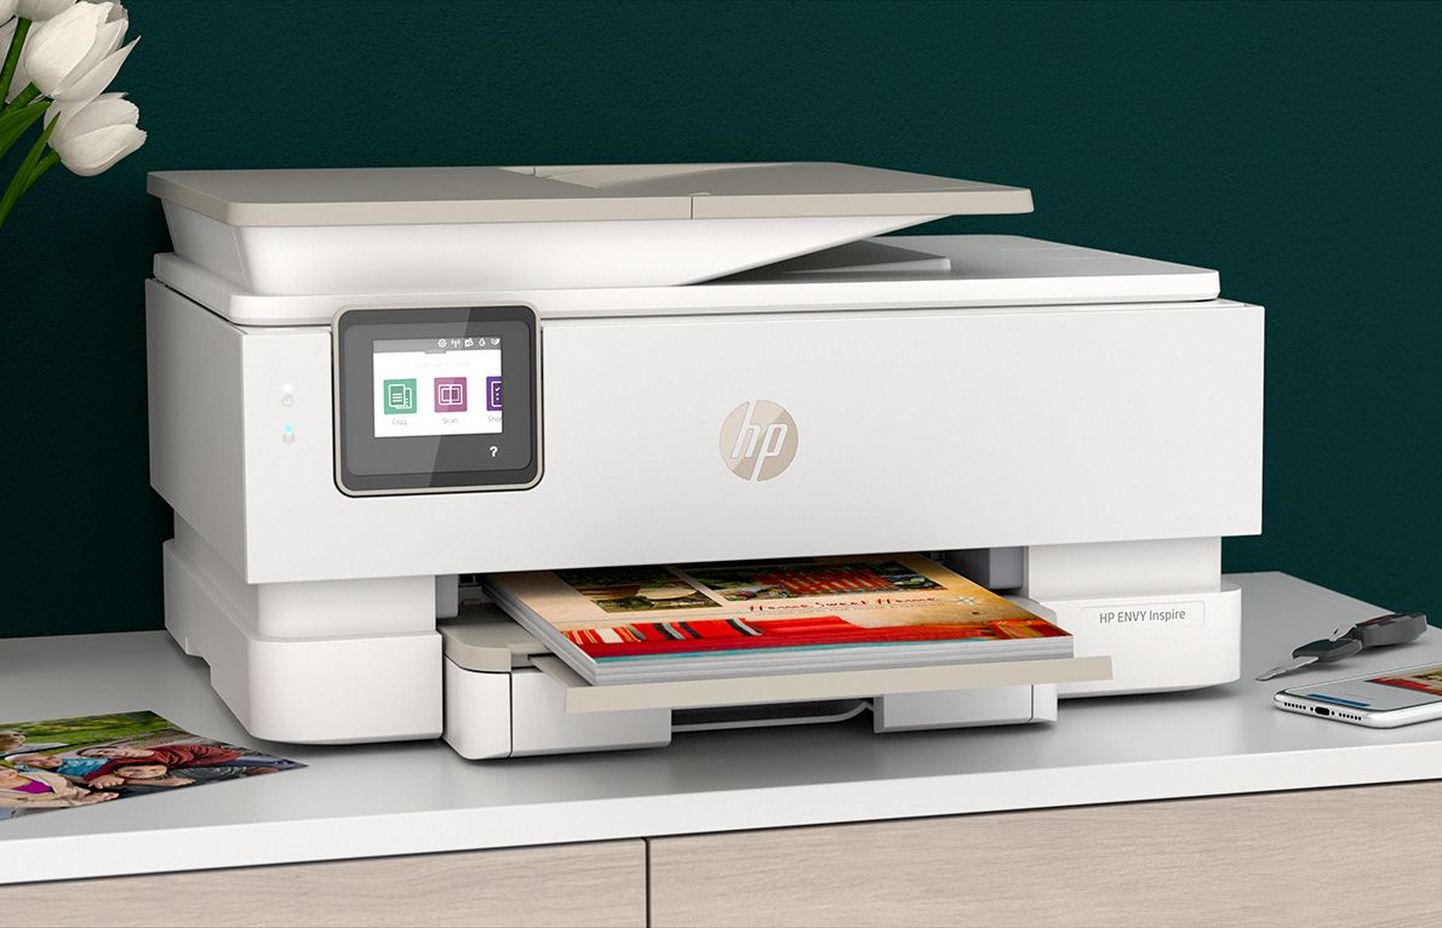 Üks renditavatest printeritest on HP Envy Inspire ja selle rendiplaan algab hinnast 8,3 eurot kuus. Selle raha eest võib oma masinast välja lasta 20 lehte kuus.